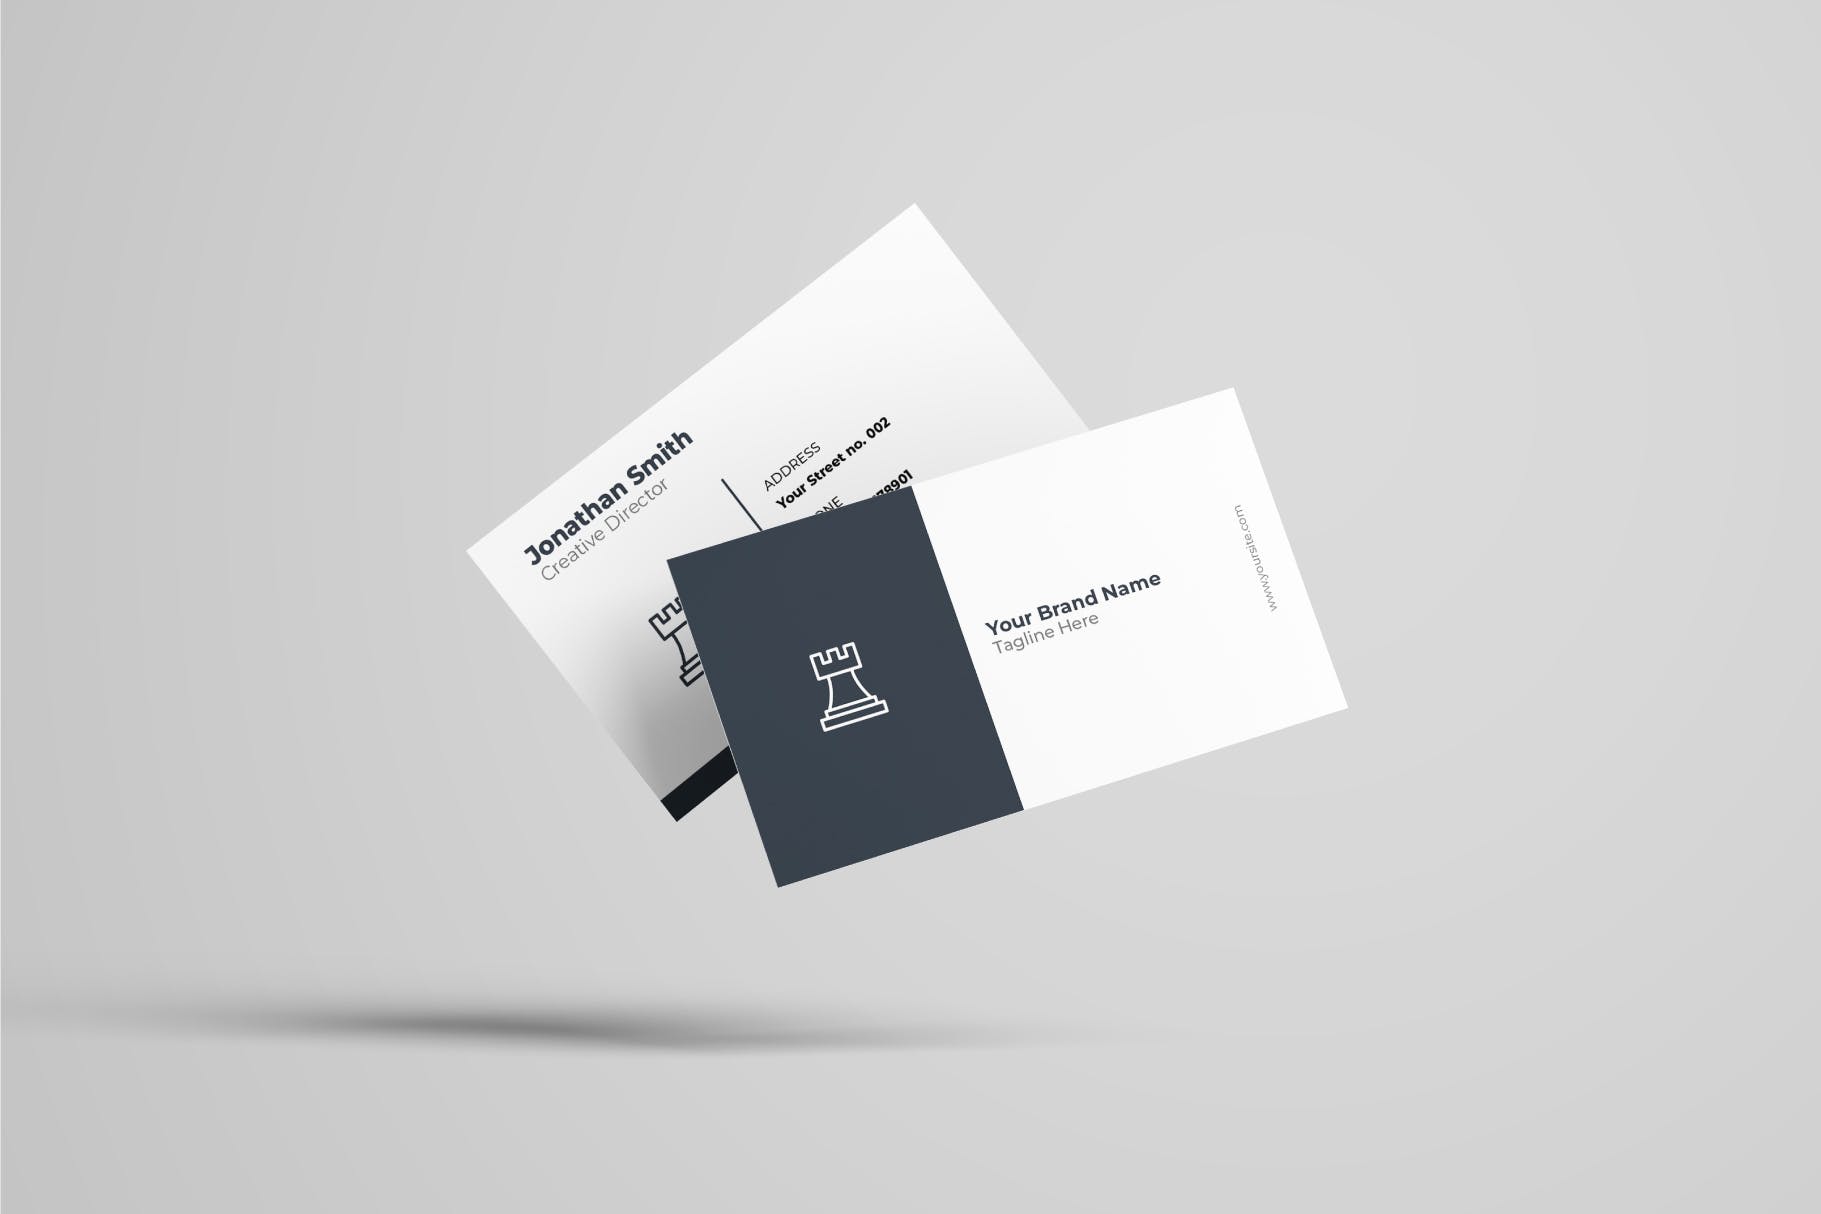 创意设计公司企业蚂蚁素材精选名片模板v41 Business Card Template.v41插图